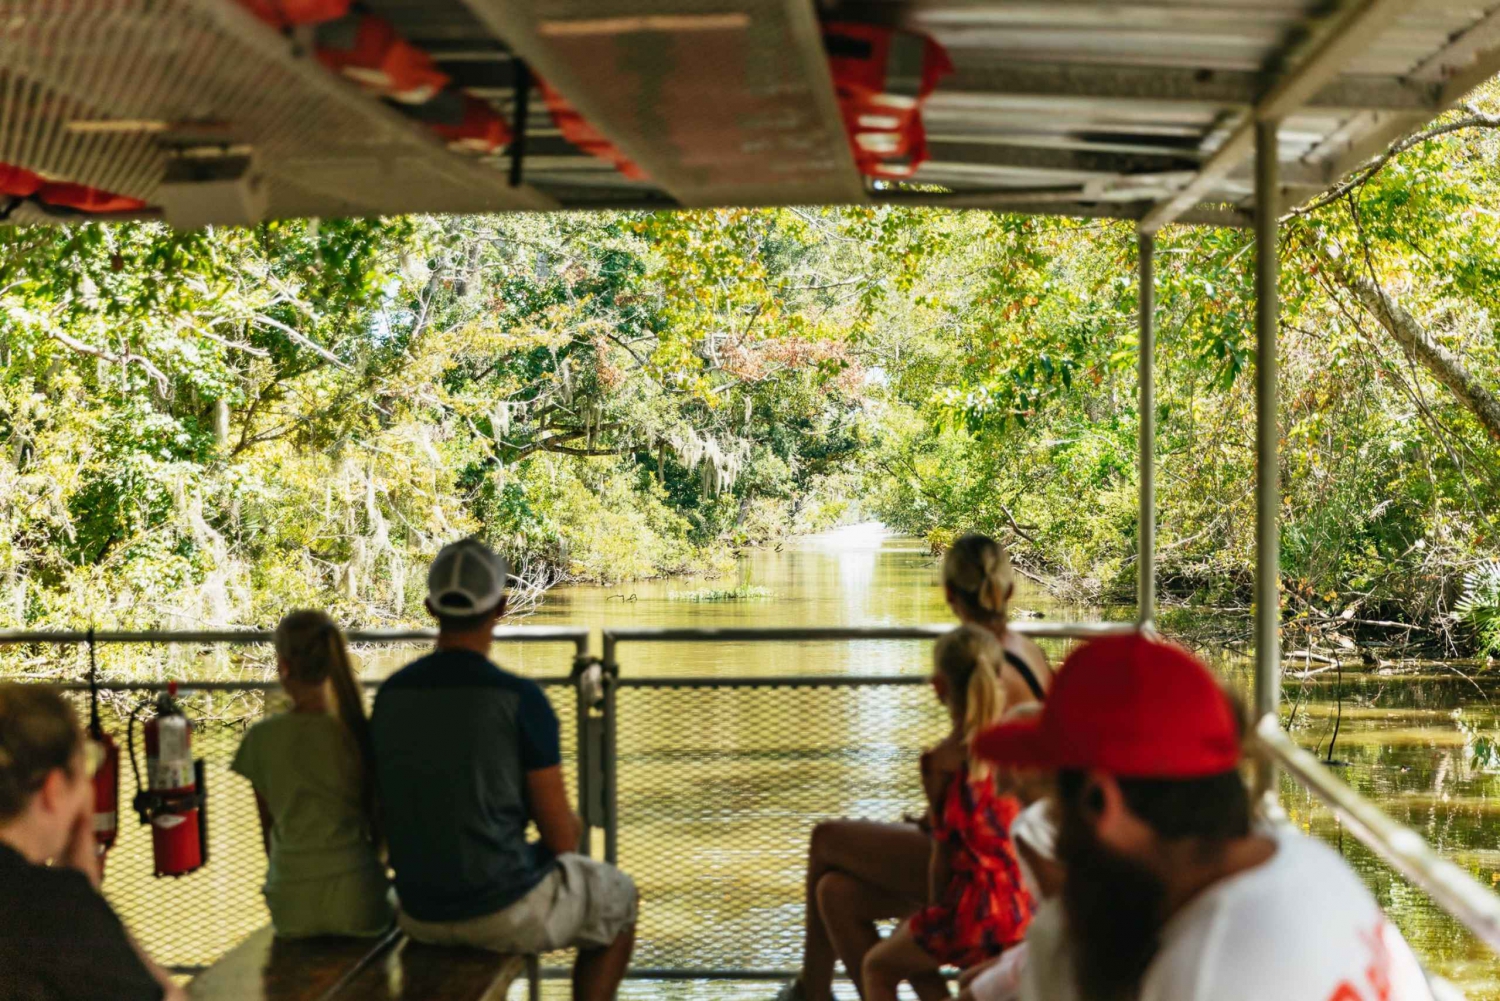 Nova Orleans: Passeio pelo Bayou no Parque Nacional Jean Lafitte